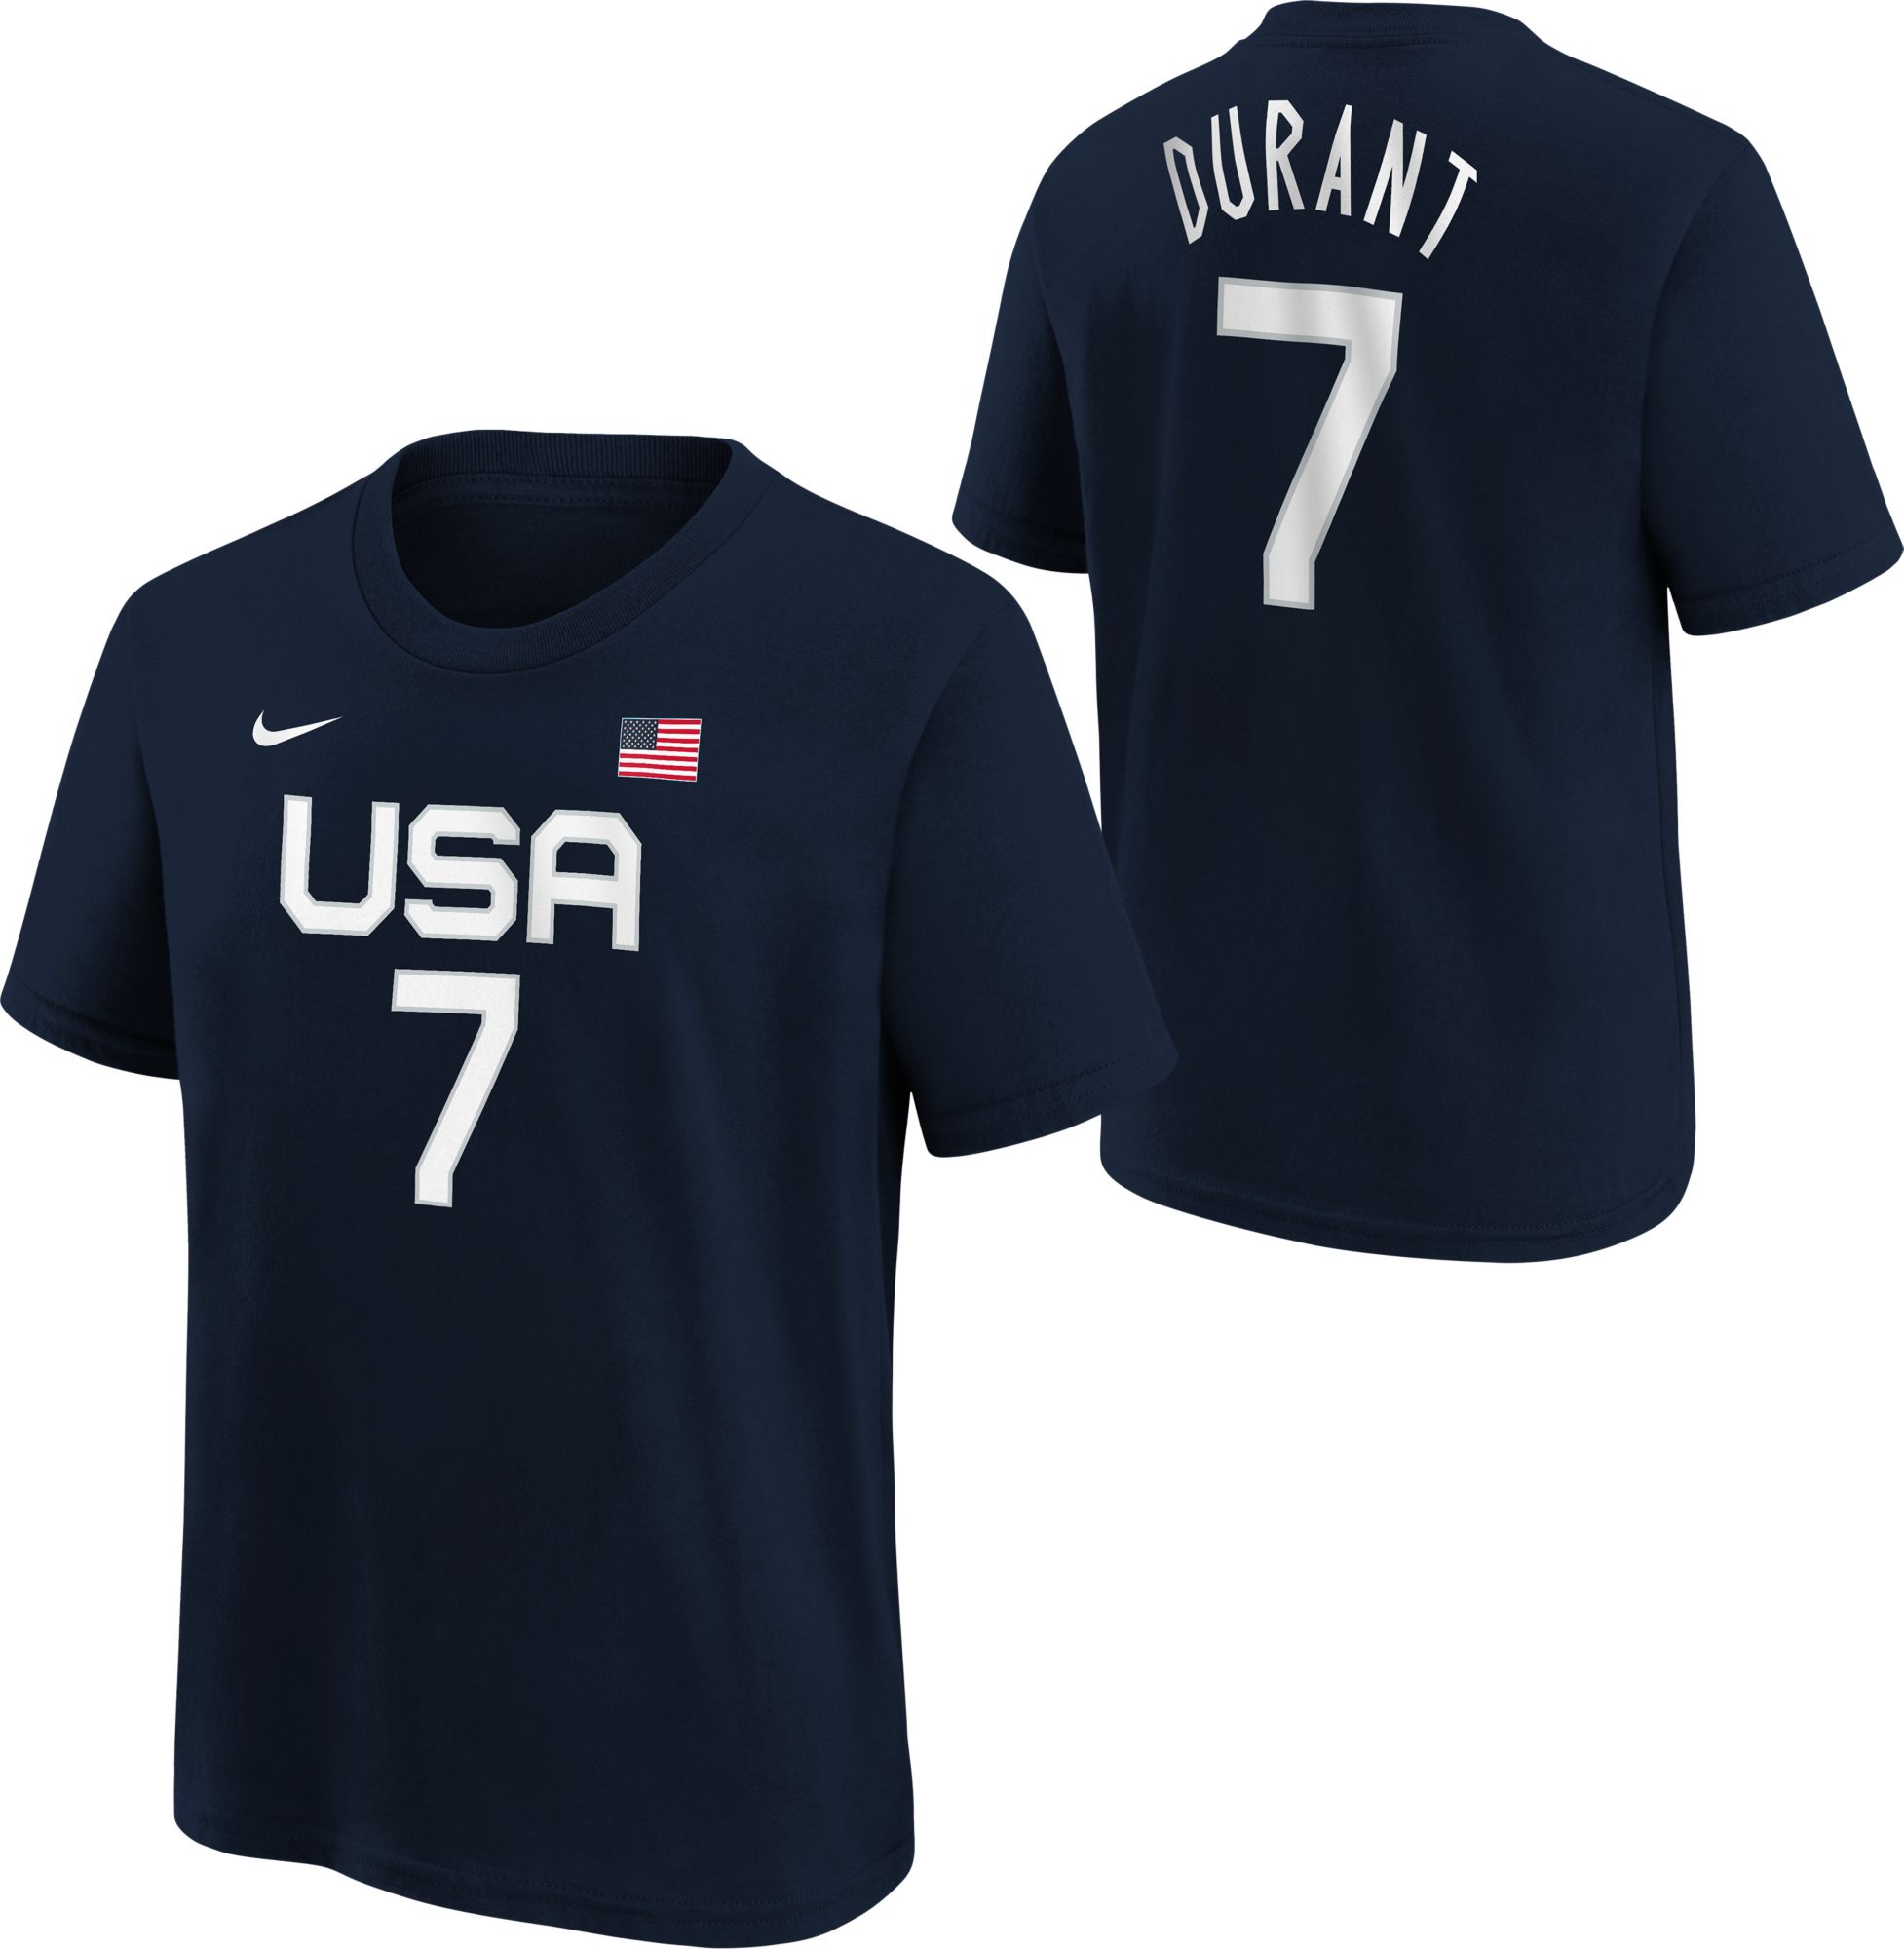 monstruo Enciclopedia Girar en descubierto Nike / Youth USA Basketball Kevin Durant #7 Navy T-Shirt